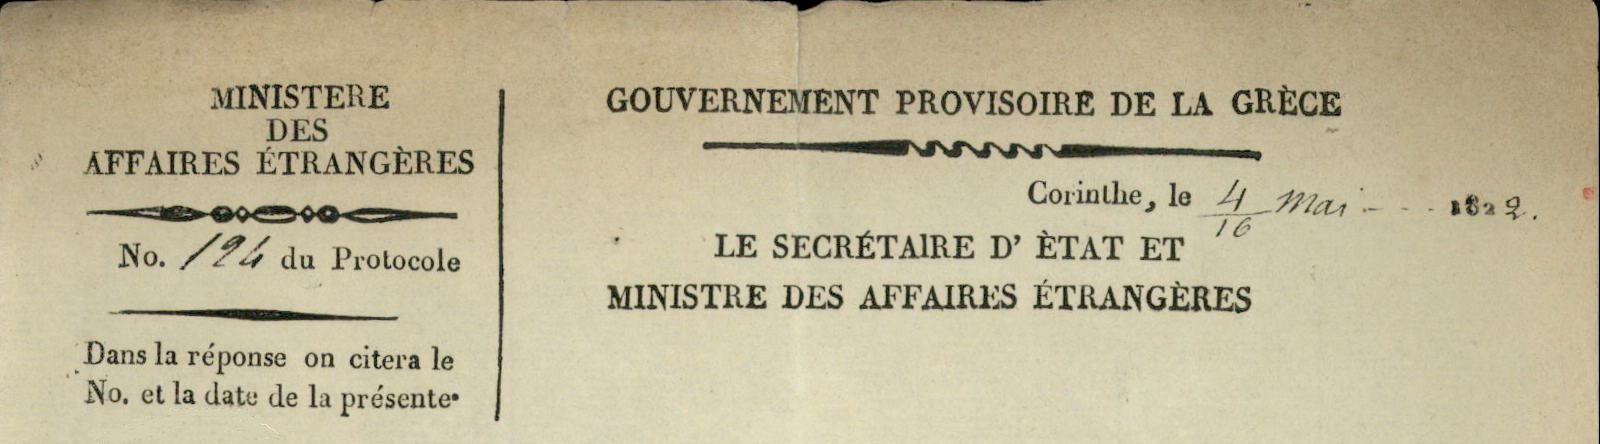 Έγγραφο με τον πρώτο τίτλο του υπουργείου Εξωτερικών το 1822